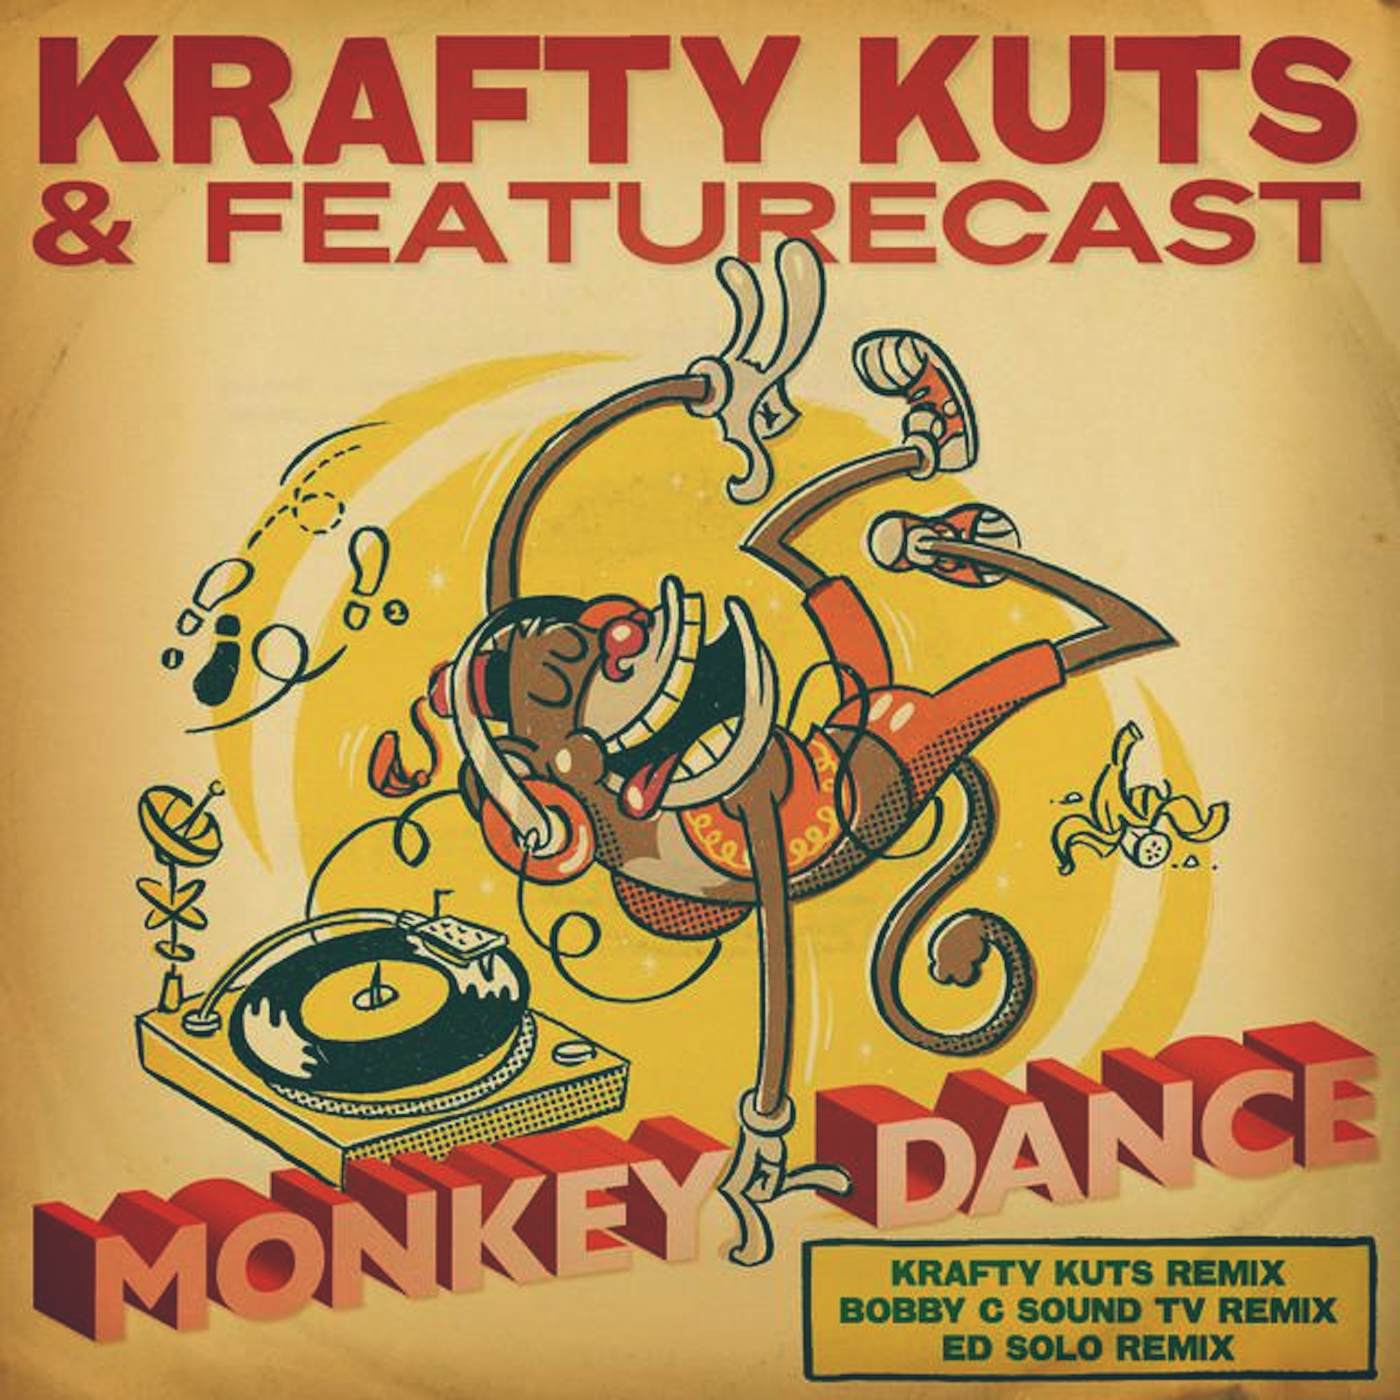 Krafty Kuts & Featurecast